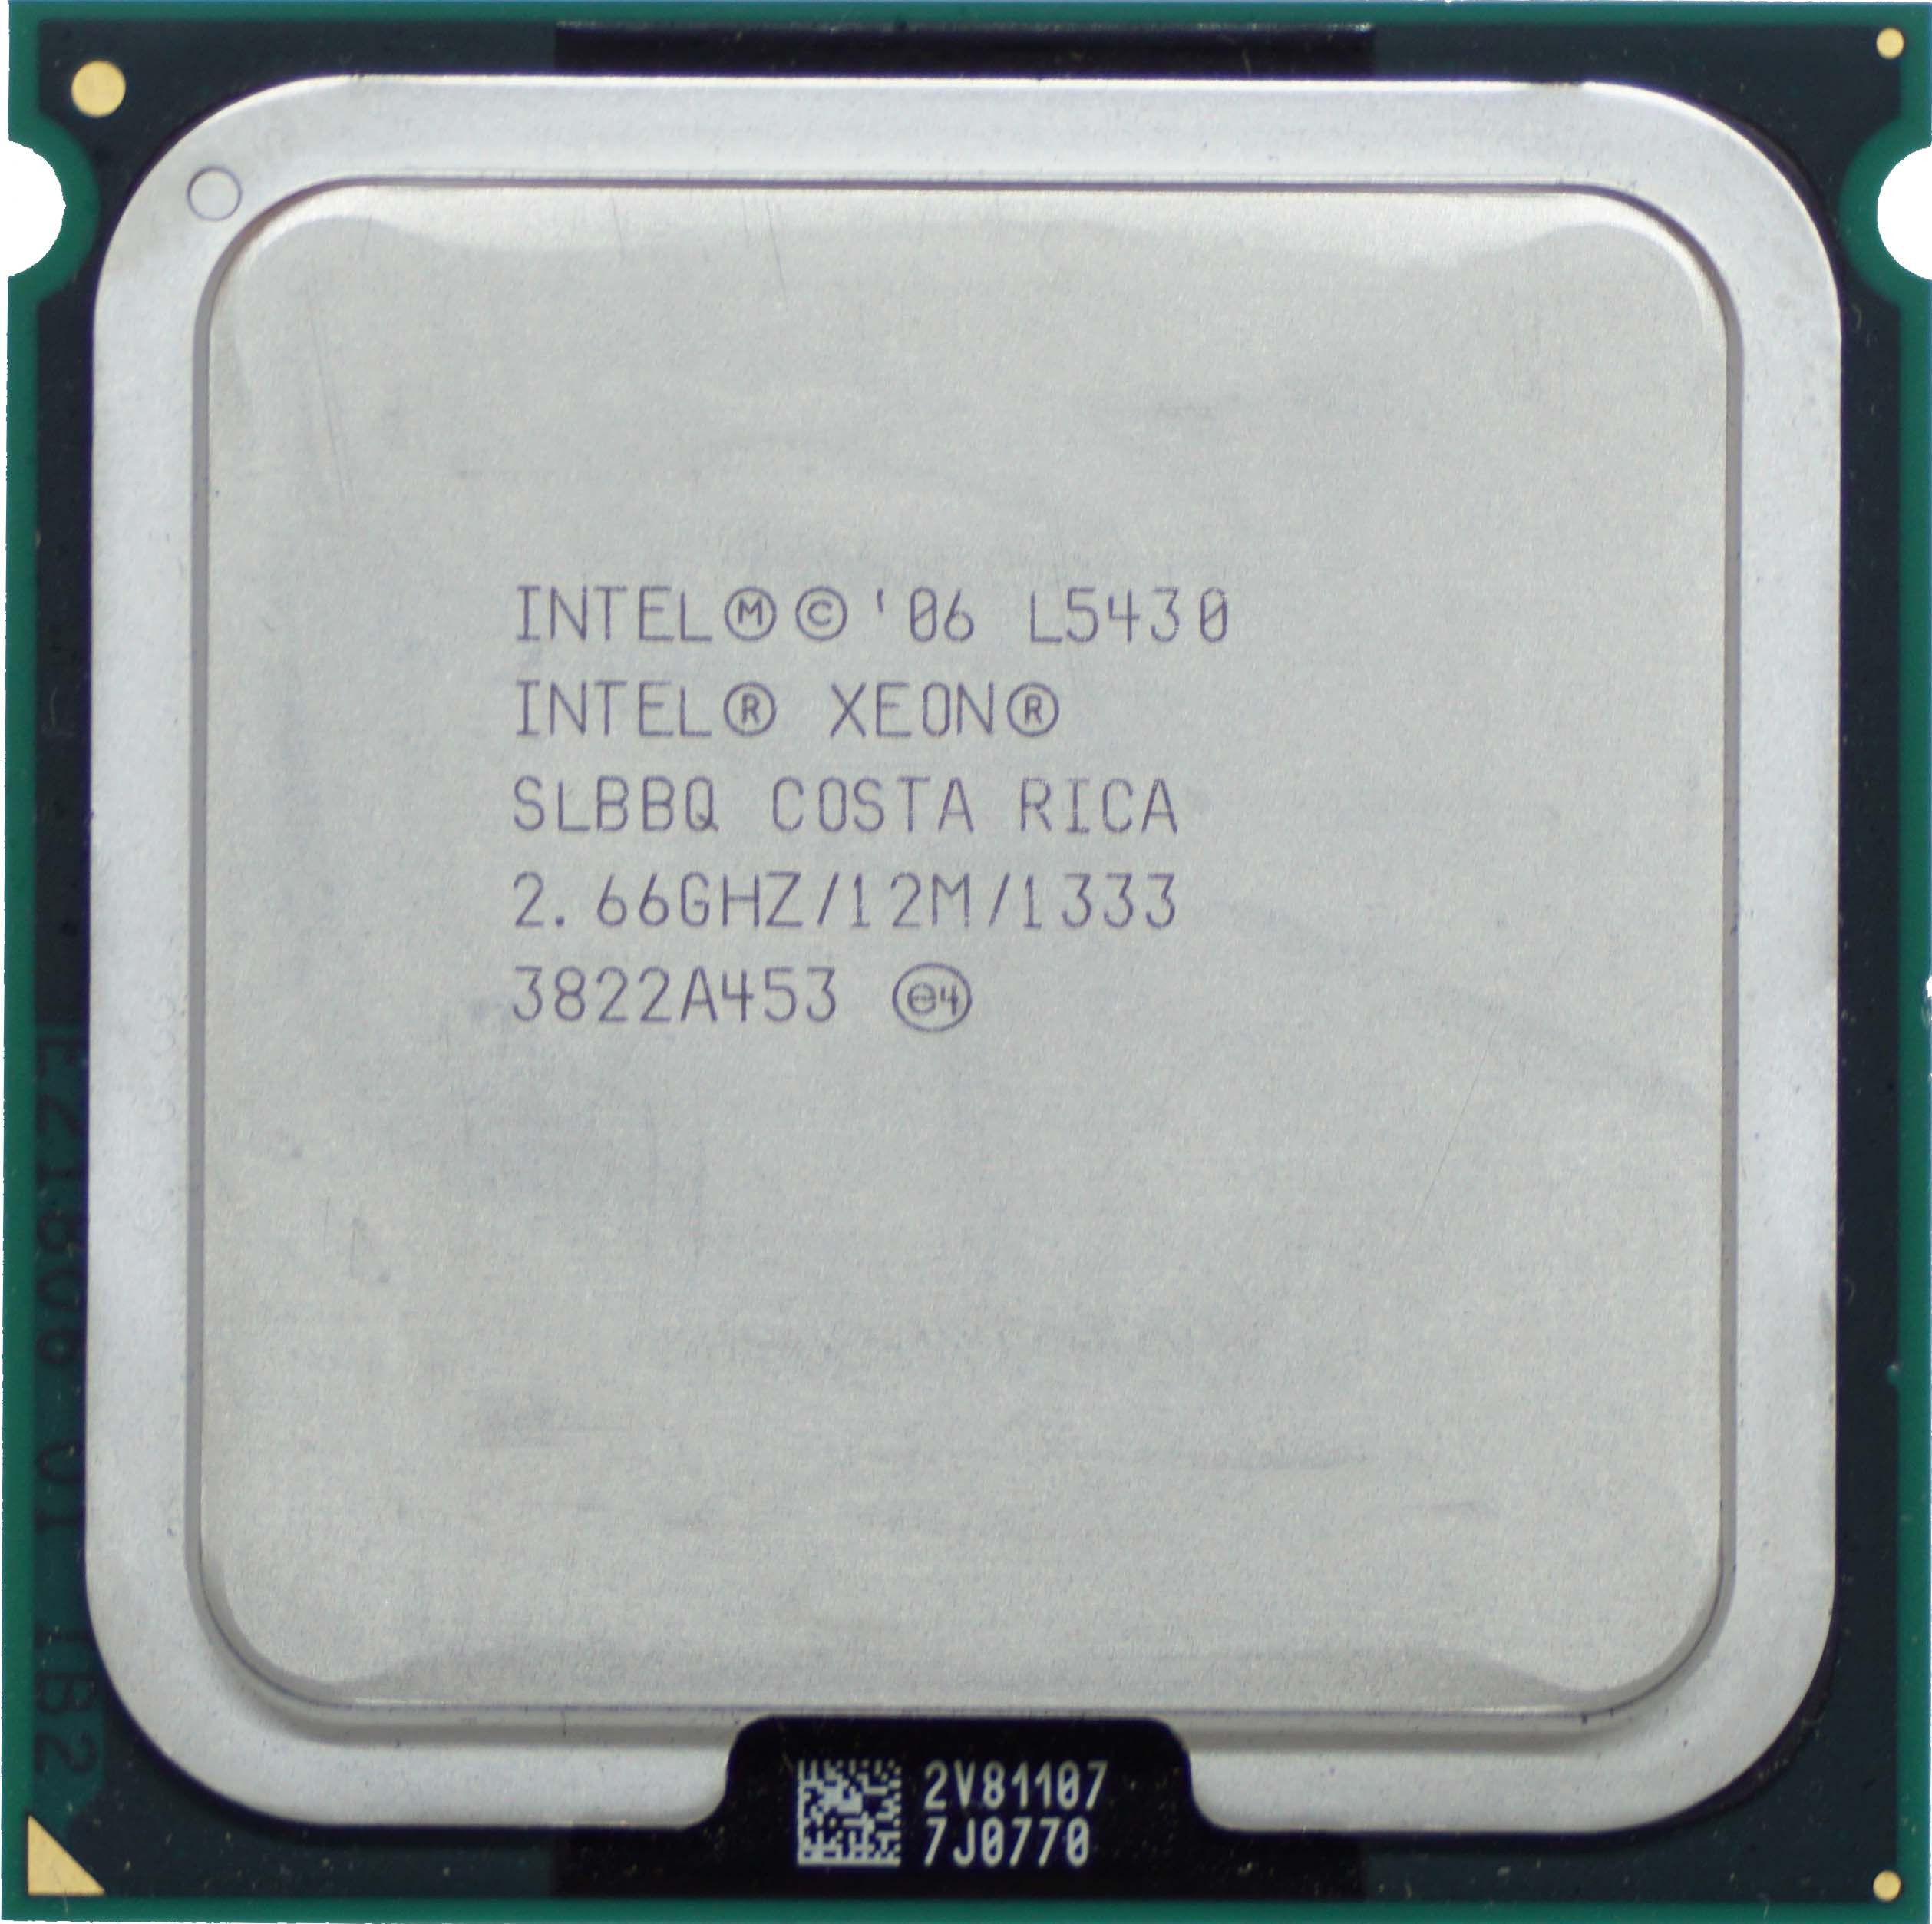 Intel Xeon L5430 (SLBBQ) 2.66Ghz Quad (4) Core LGA771 50W CPU